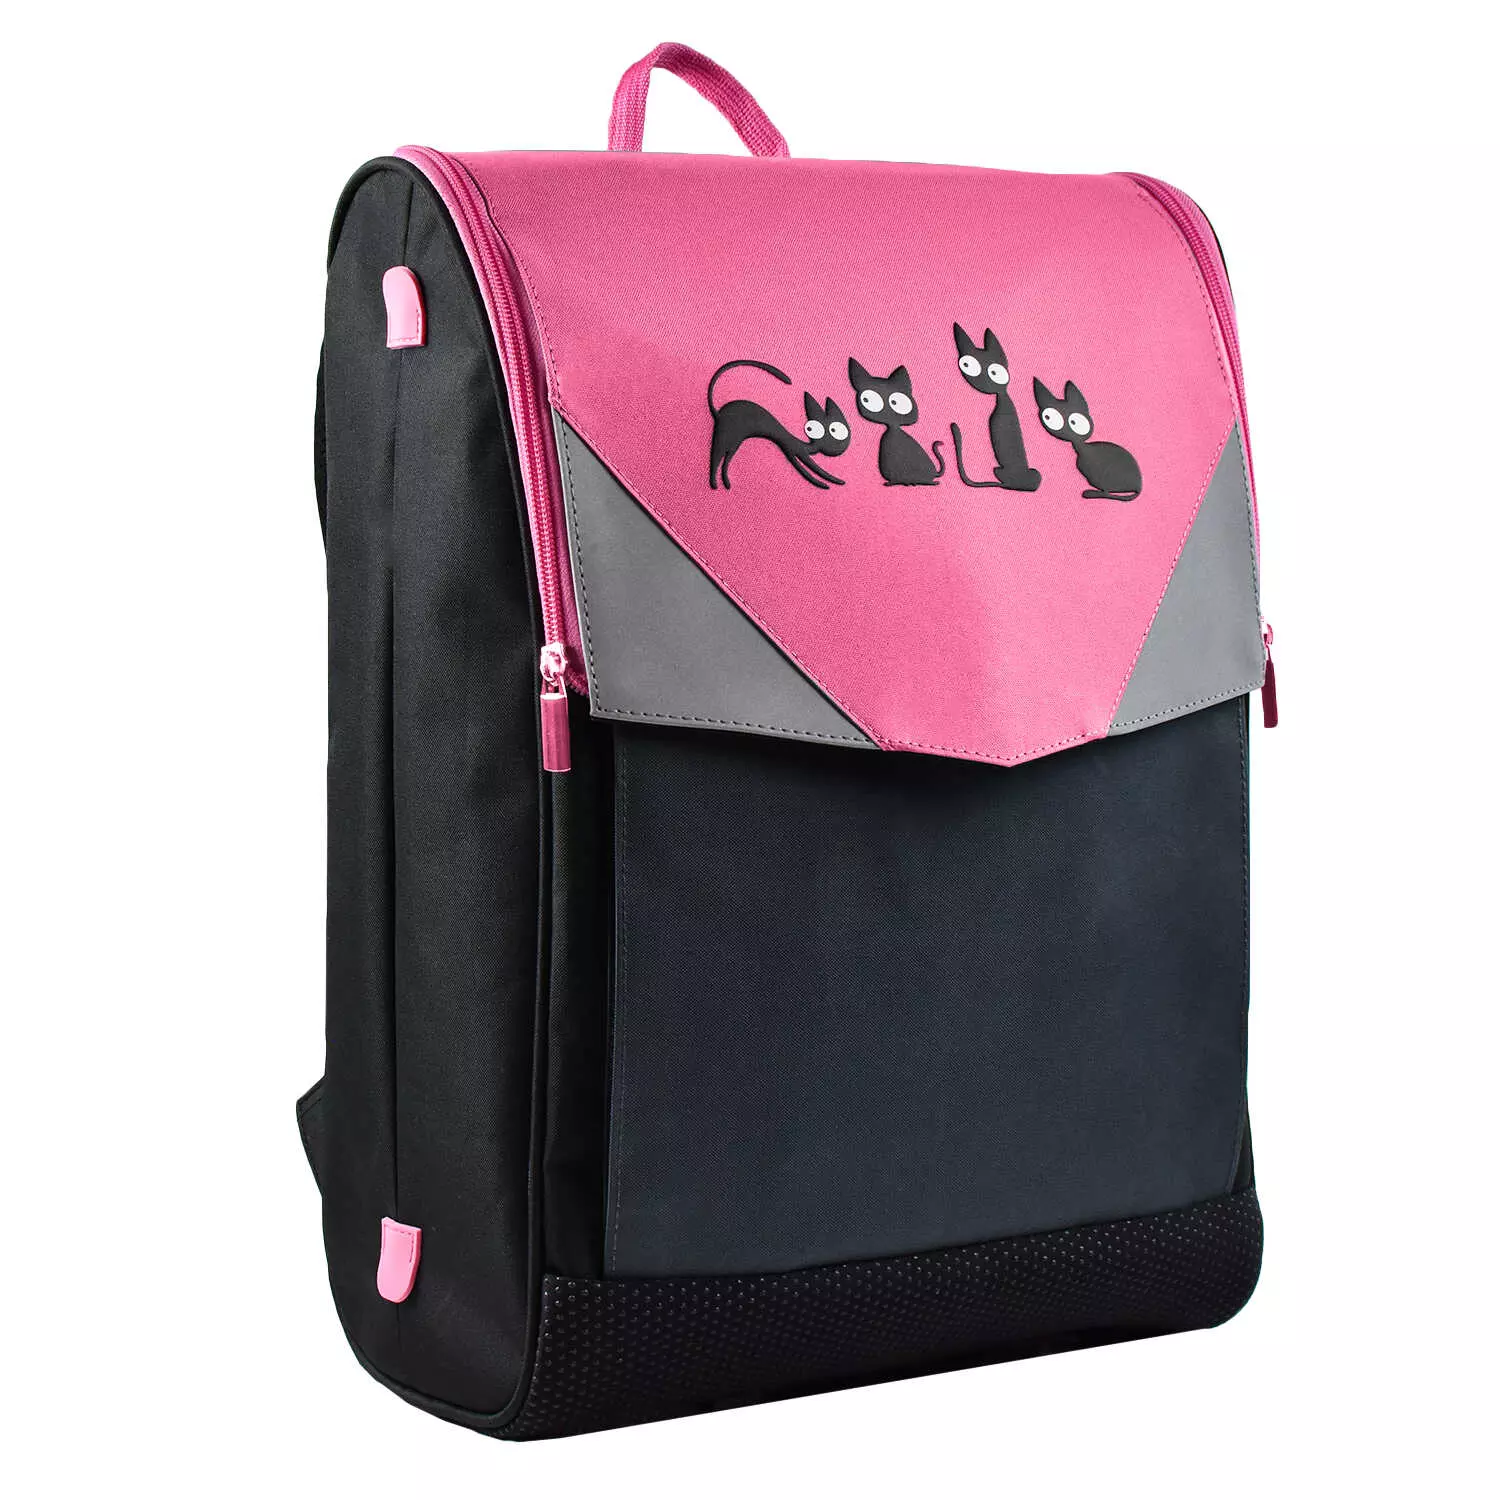 Школьный рюкзак 54141 КОШКИ (26х40х12 см, полиэстер, шелкография в две краски, 1 отделение